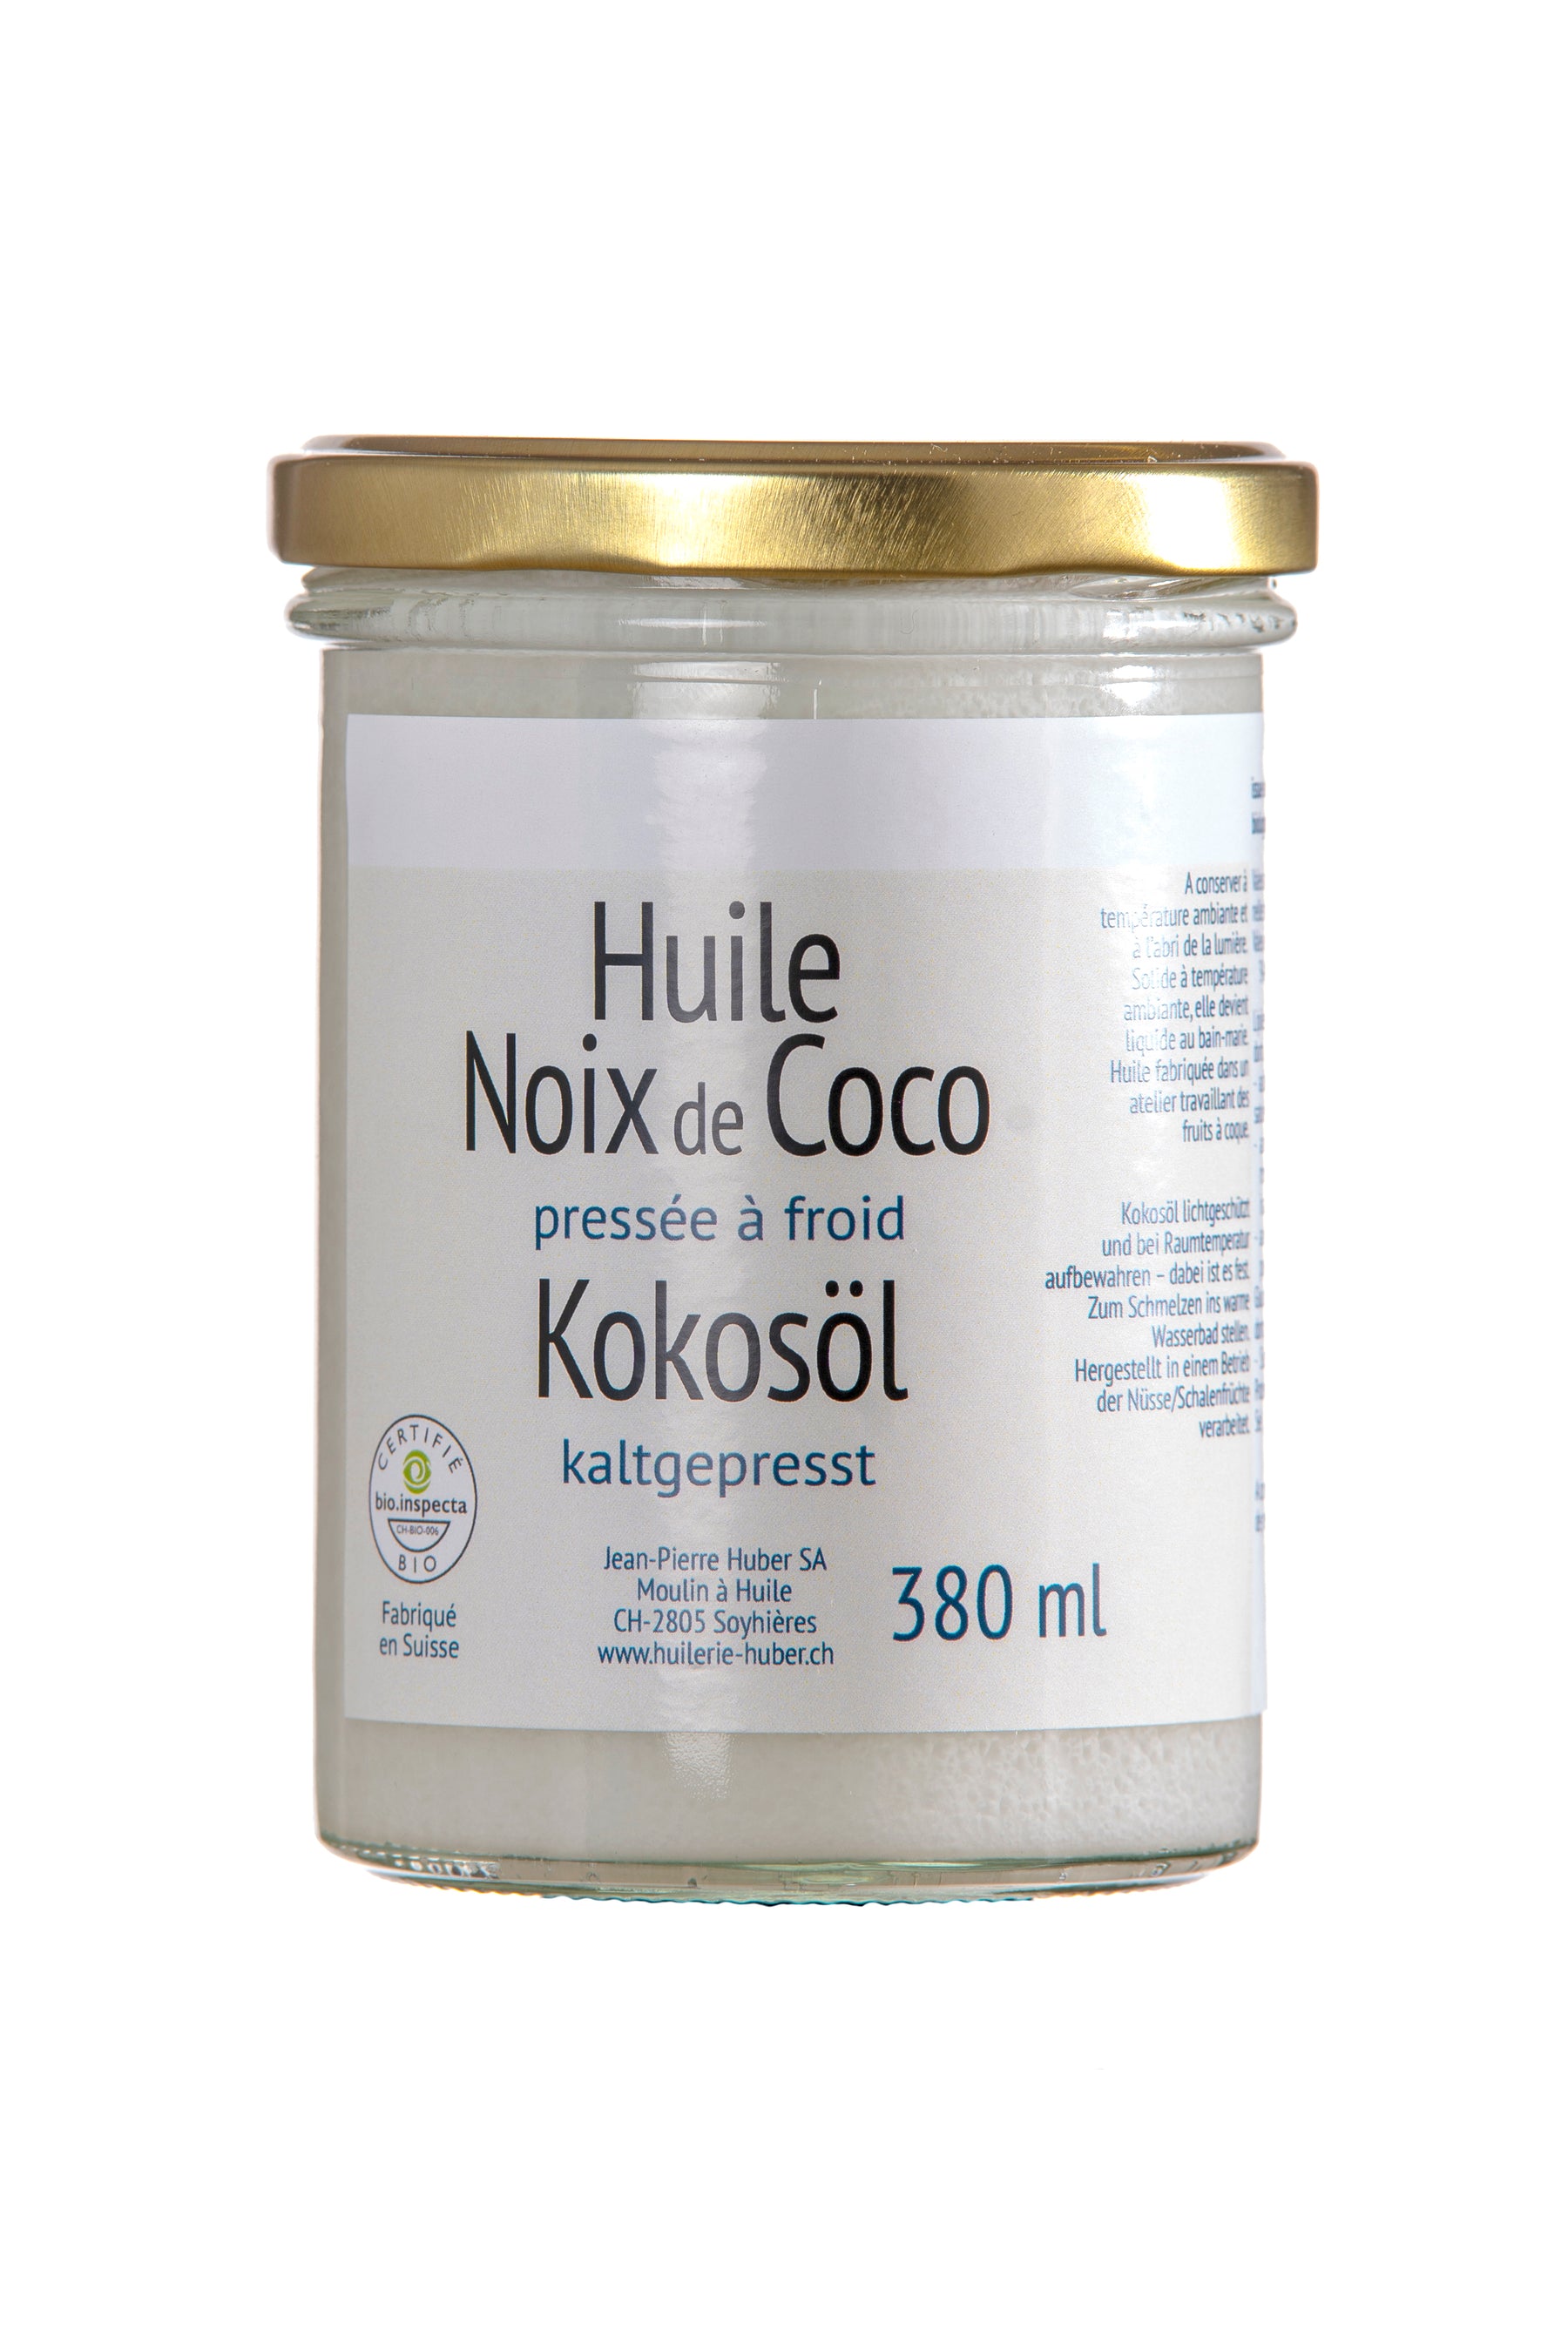 Huile de Noix de Coco BIO – Moulin à huile de Soyhières